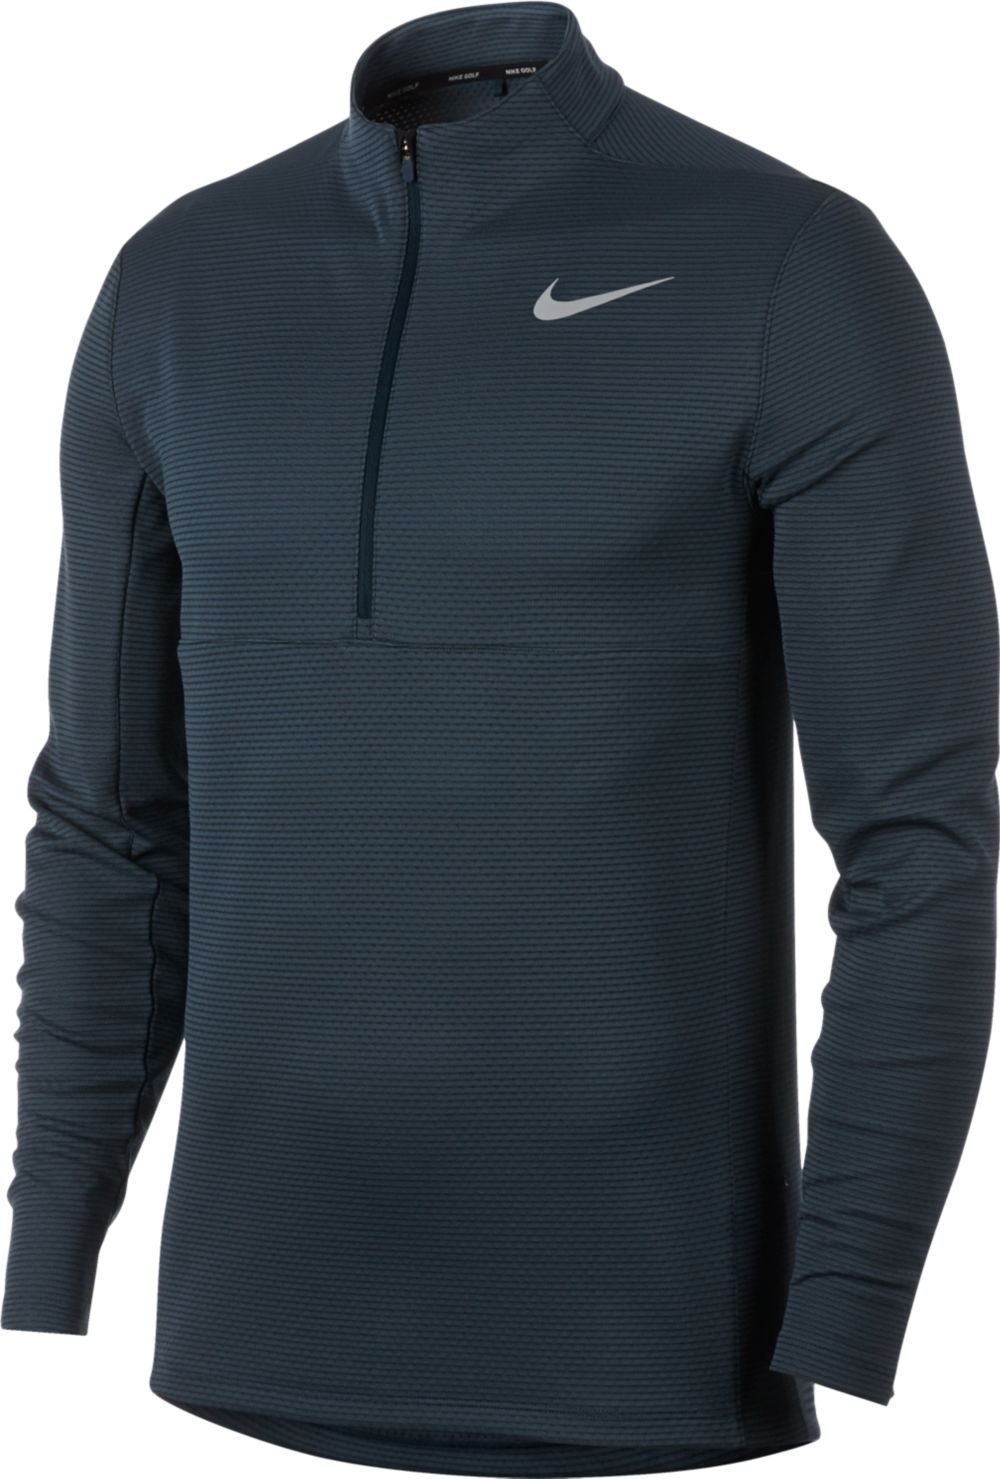 Nike Mens Aeroreact Top Golf Pullovers